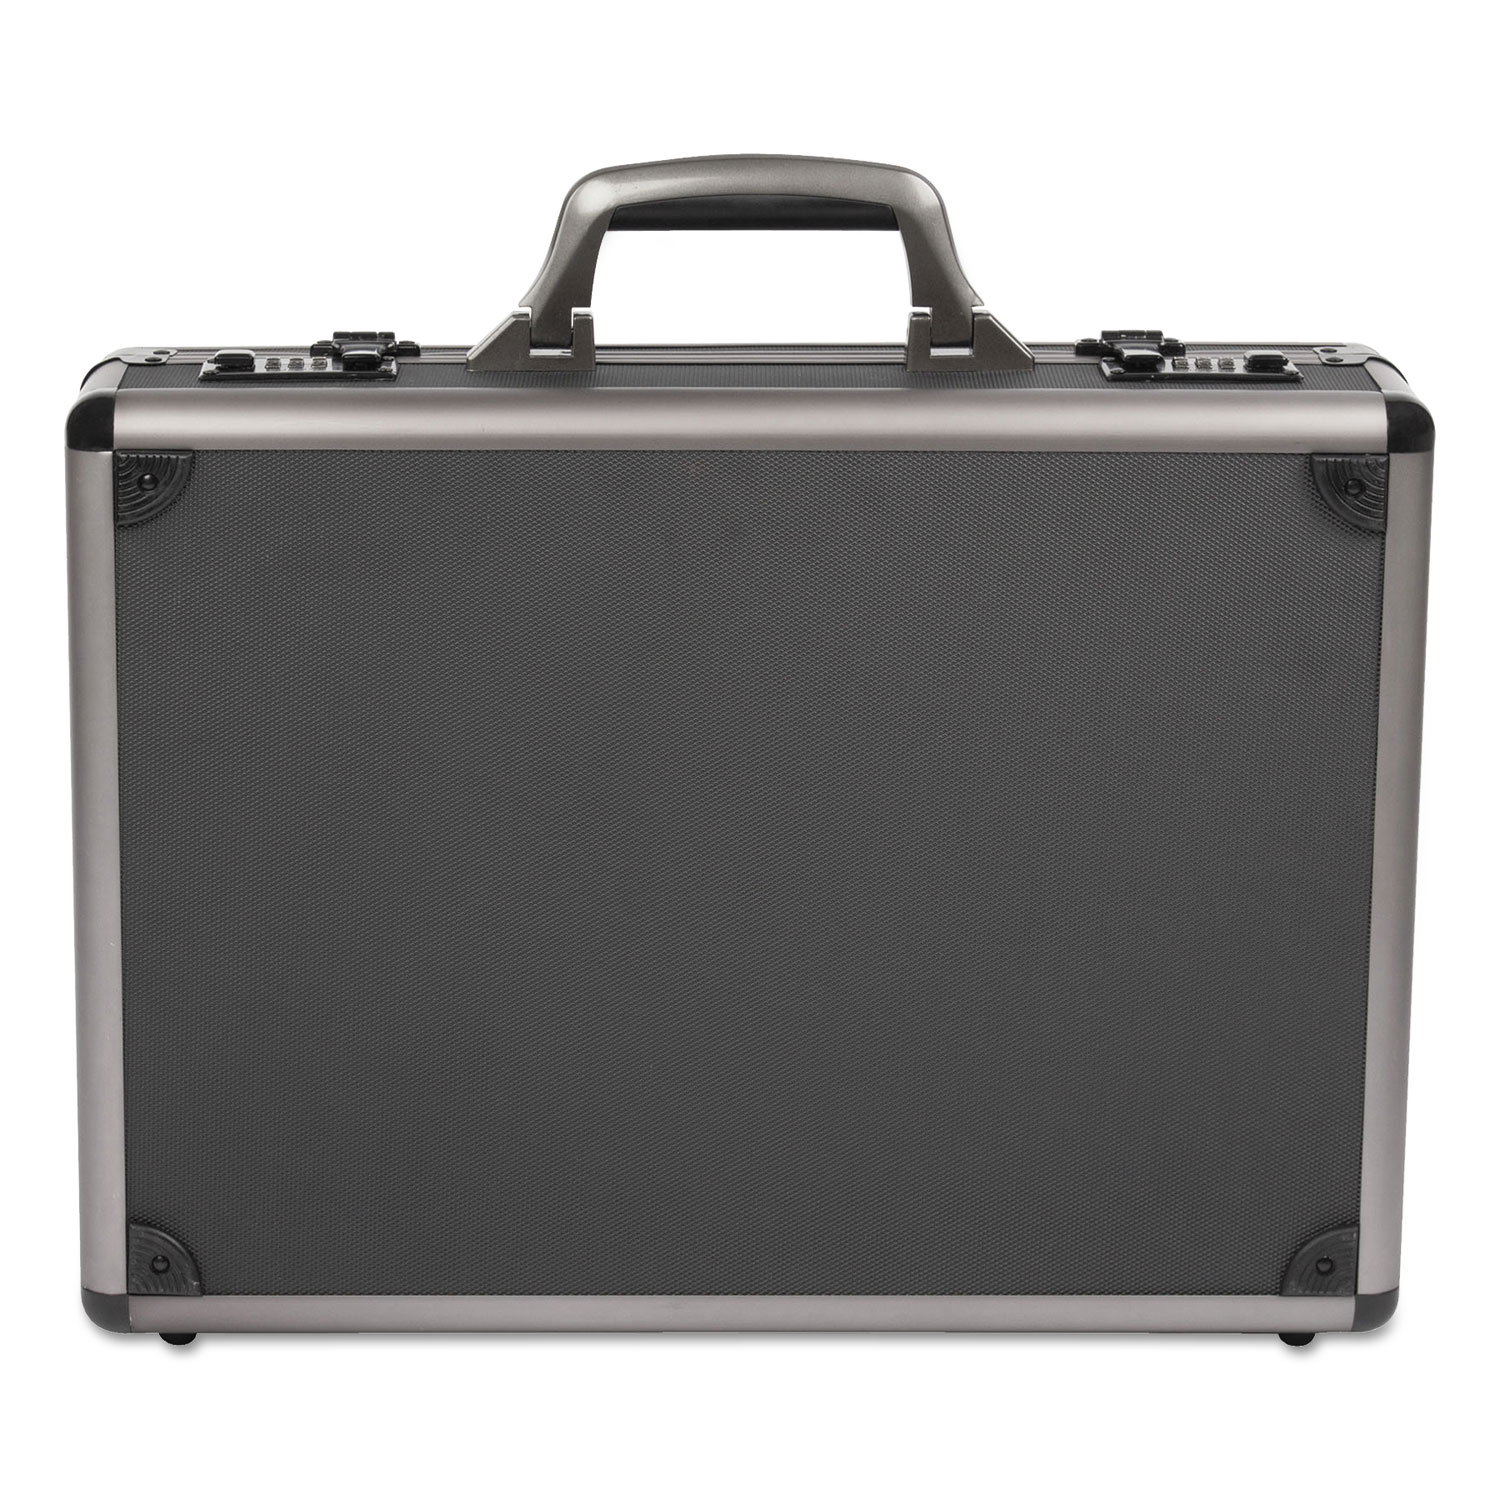 Itala Aluminum Attache Case, 13 x 5 x 18, Black